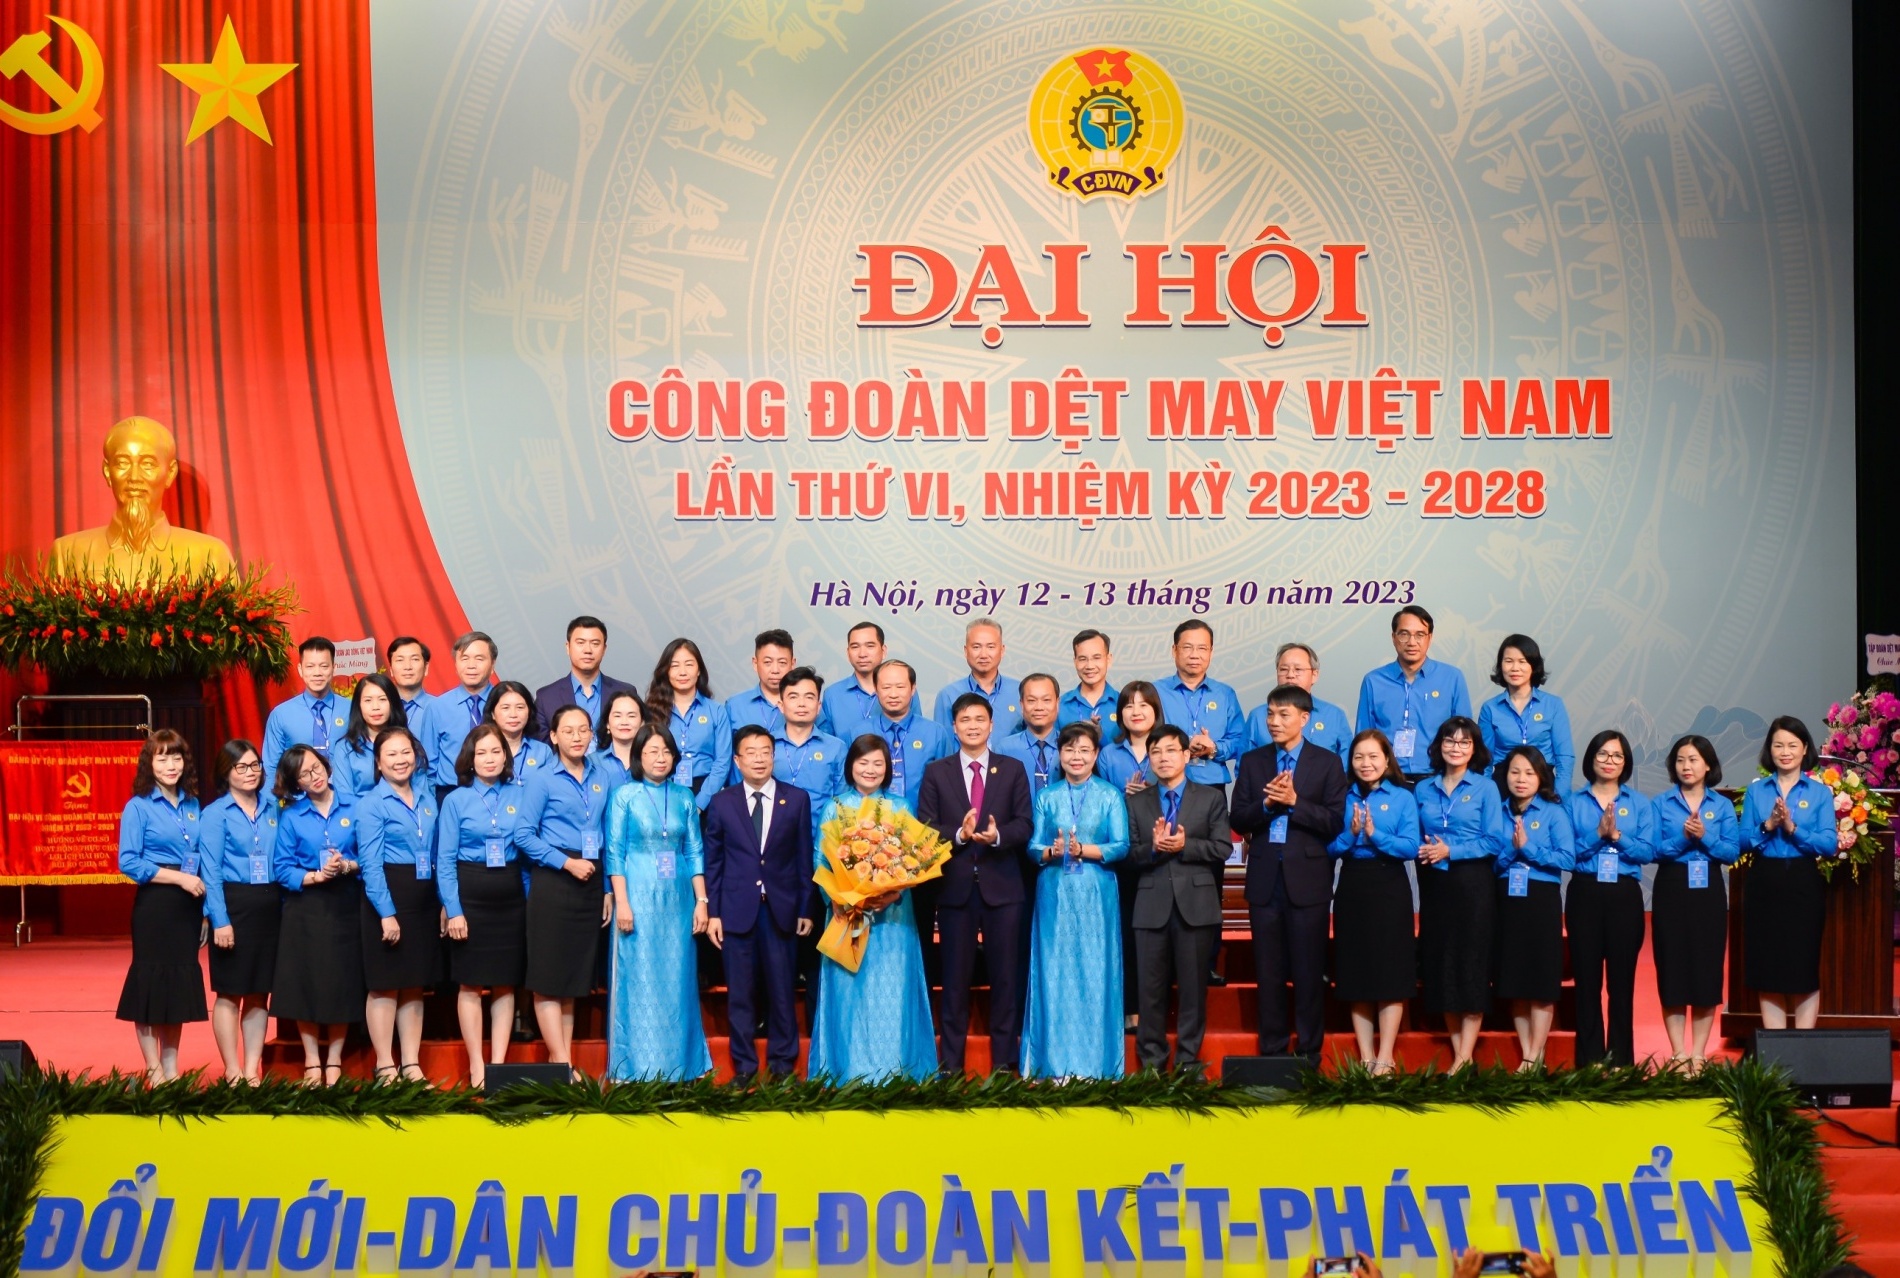 Các chỉ tiêu của Công đoàn Dệt May Việt Nam nhiệm kỳ 2023-2028